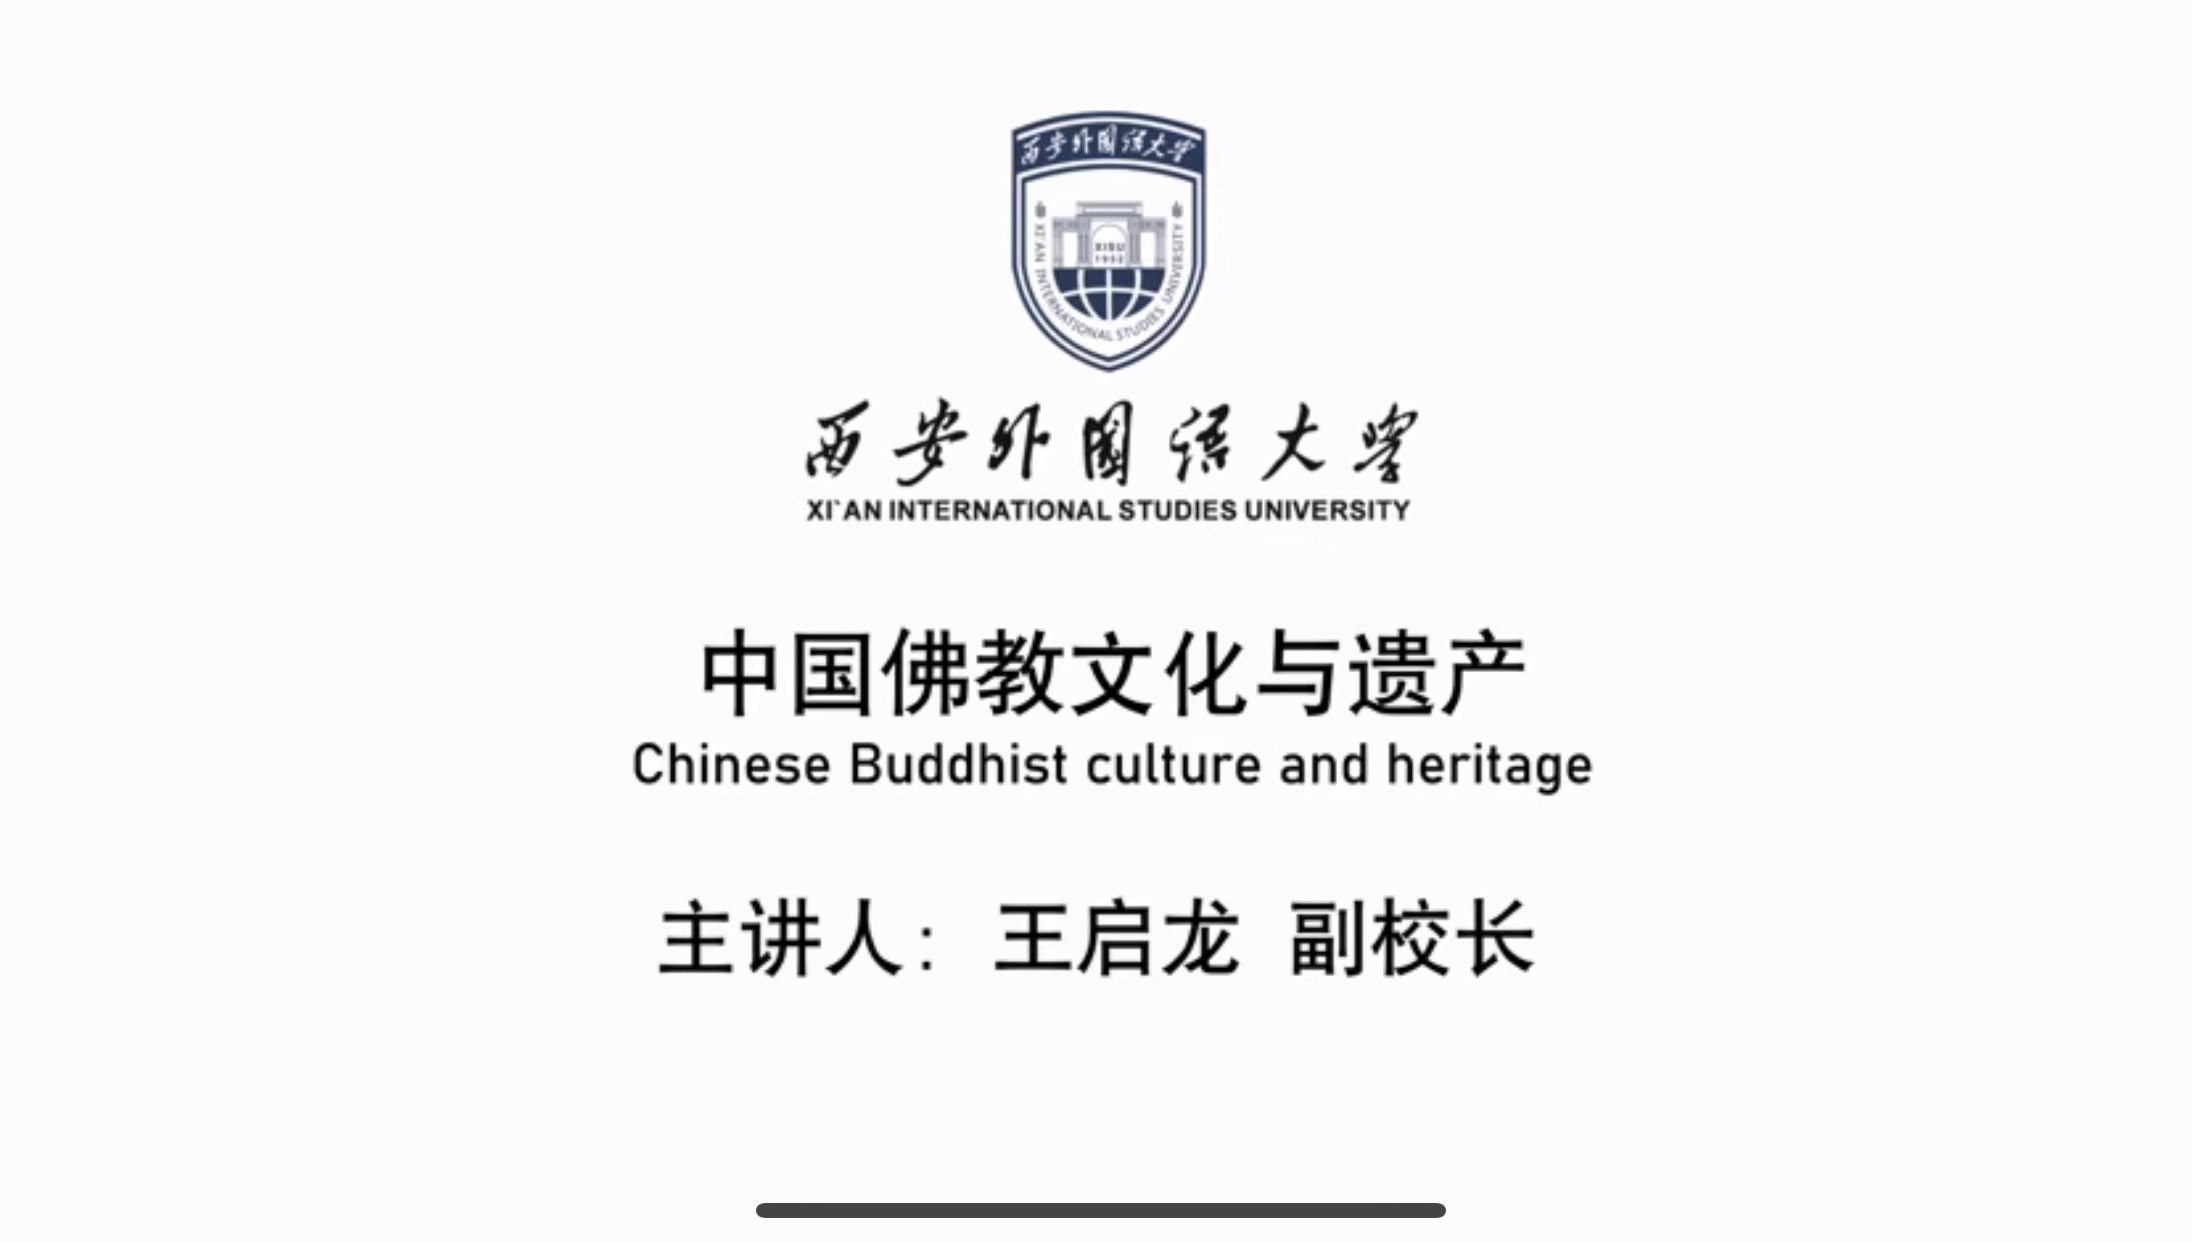 Buddhism and Heritage in China (Chinese Buddhism)